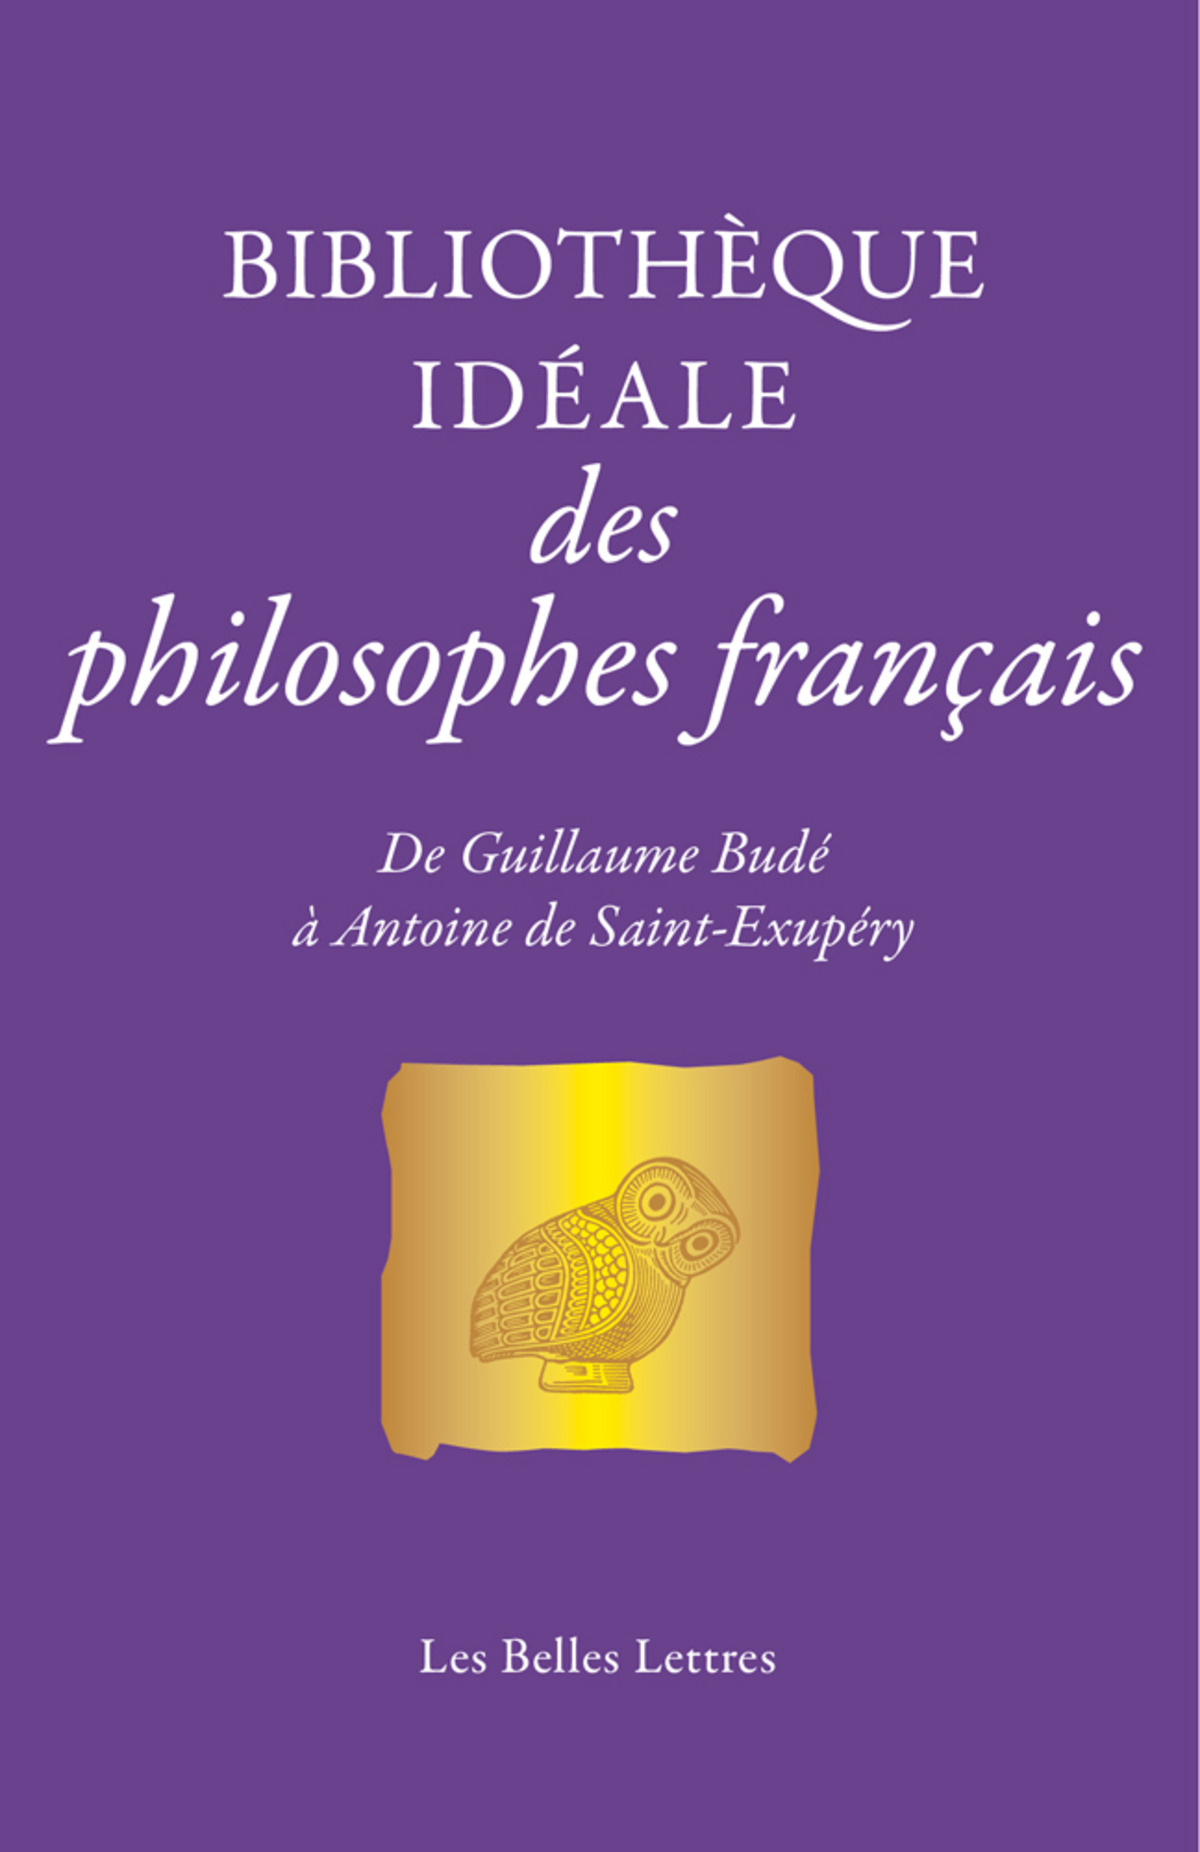 Bibliothèque idéale des philosophes français - Les Belles Lettres